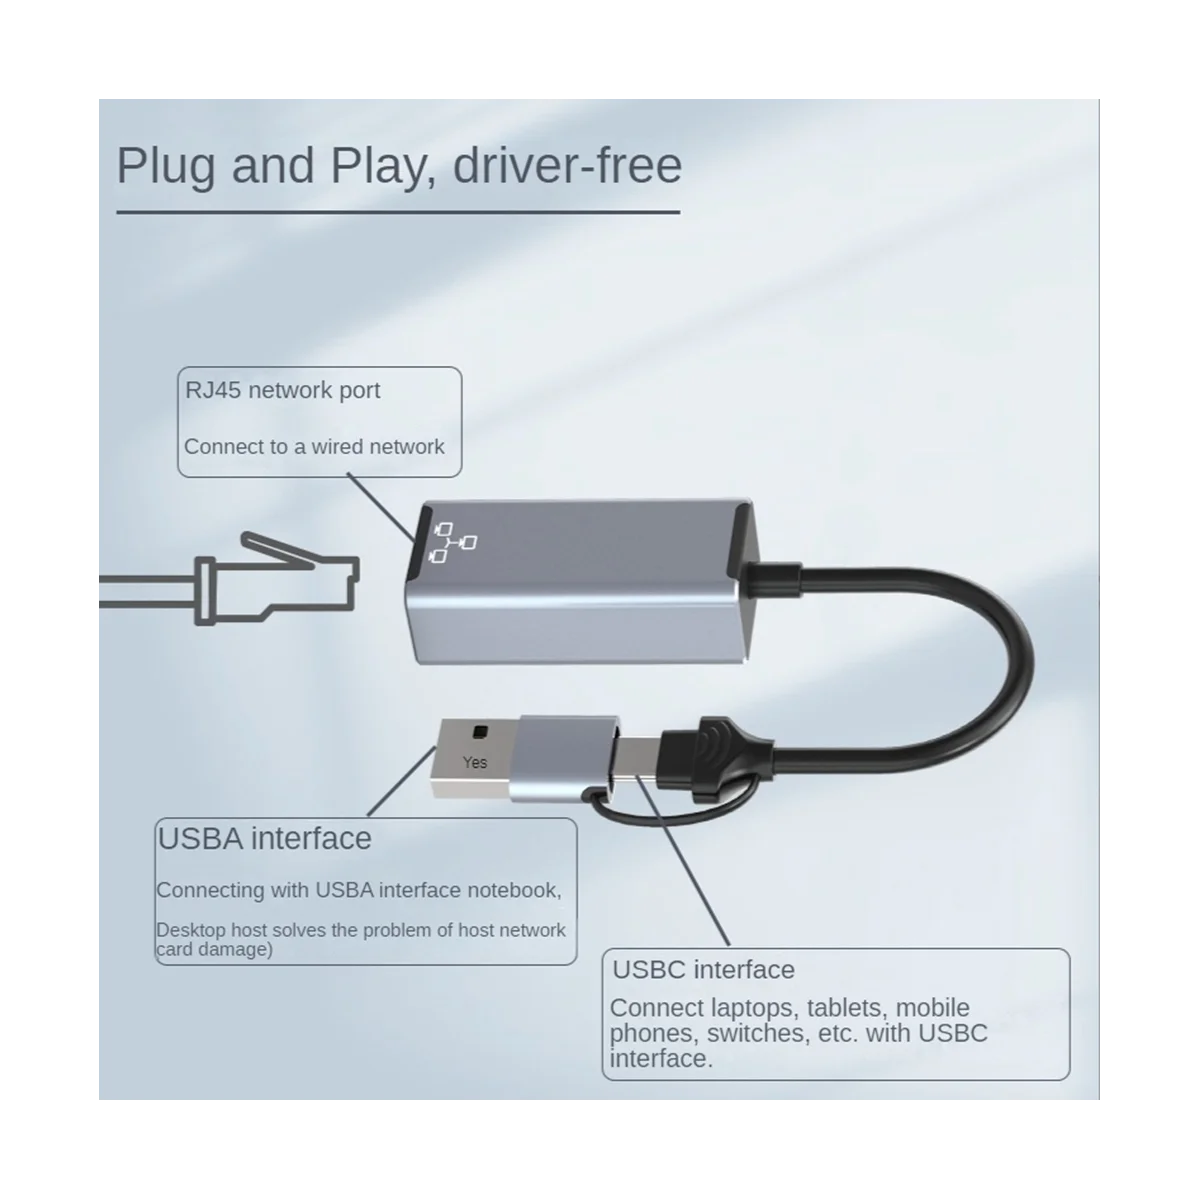 Проводная сетевая карта USB Type C к RJ45, высокоскоростной адаптер USB 3.0 к Ethernet для портативных ПК, сеть 100 Мбит/с